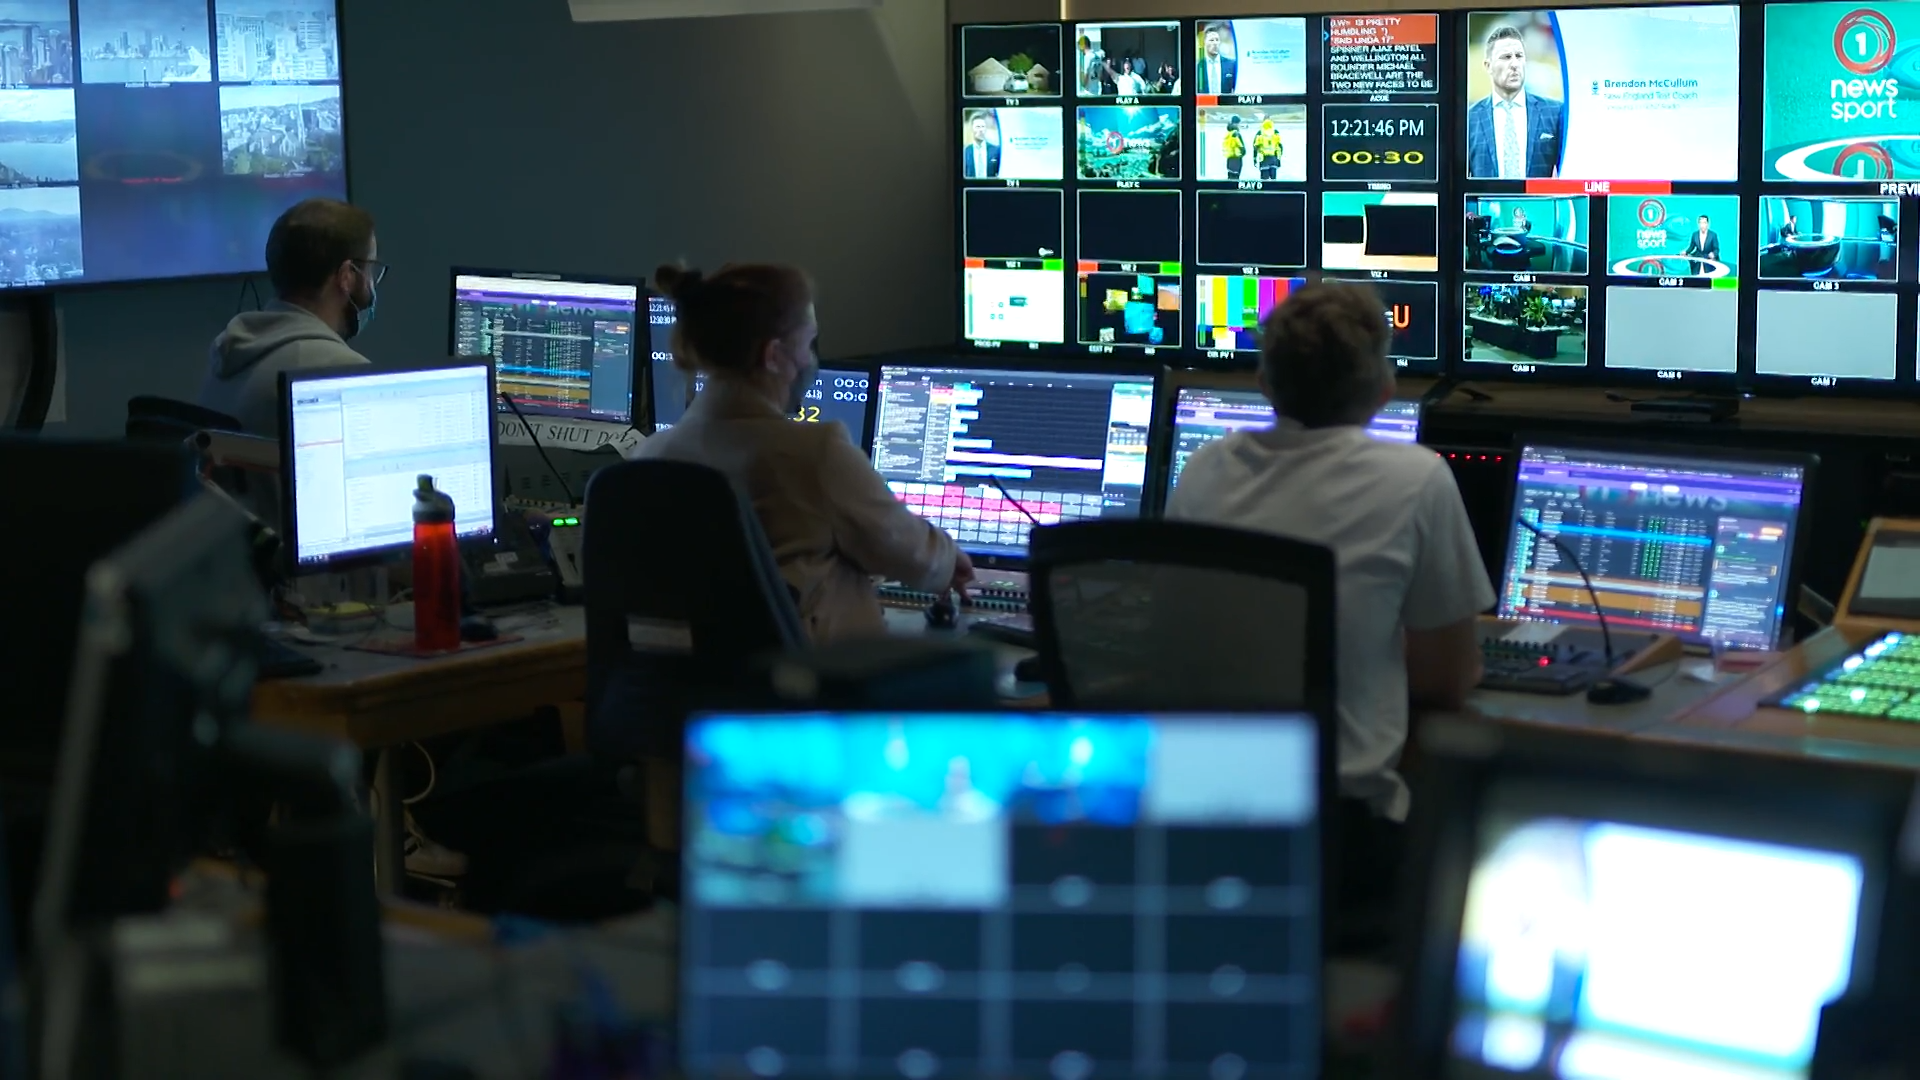 Control room at TVNZ